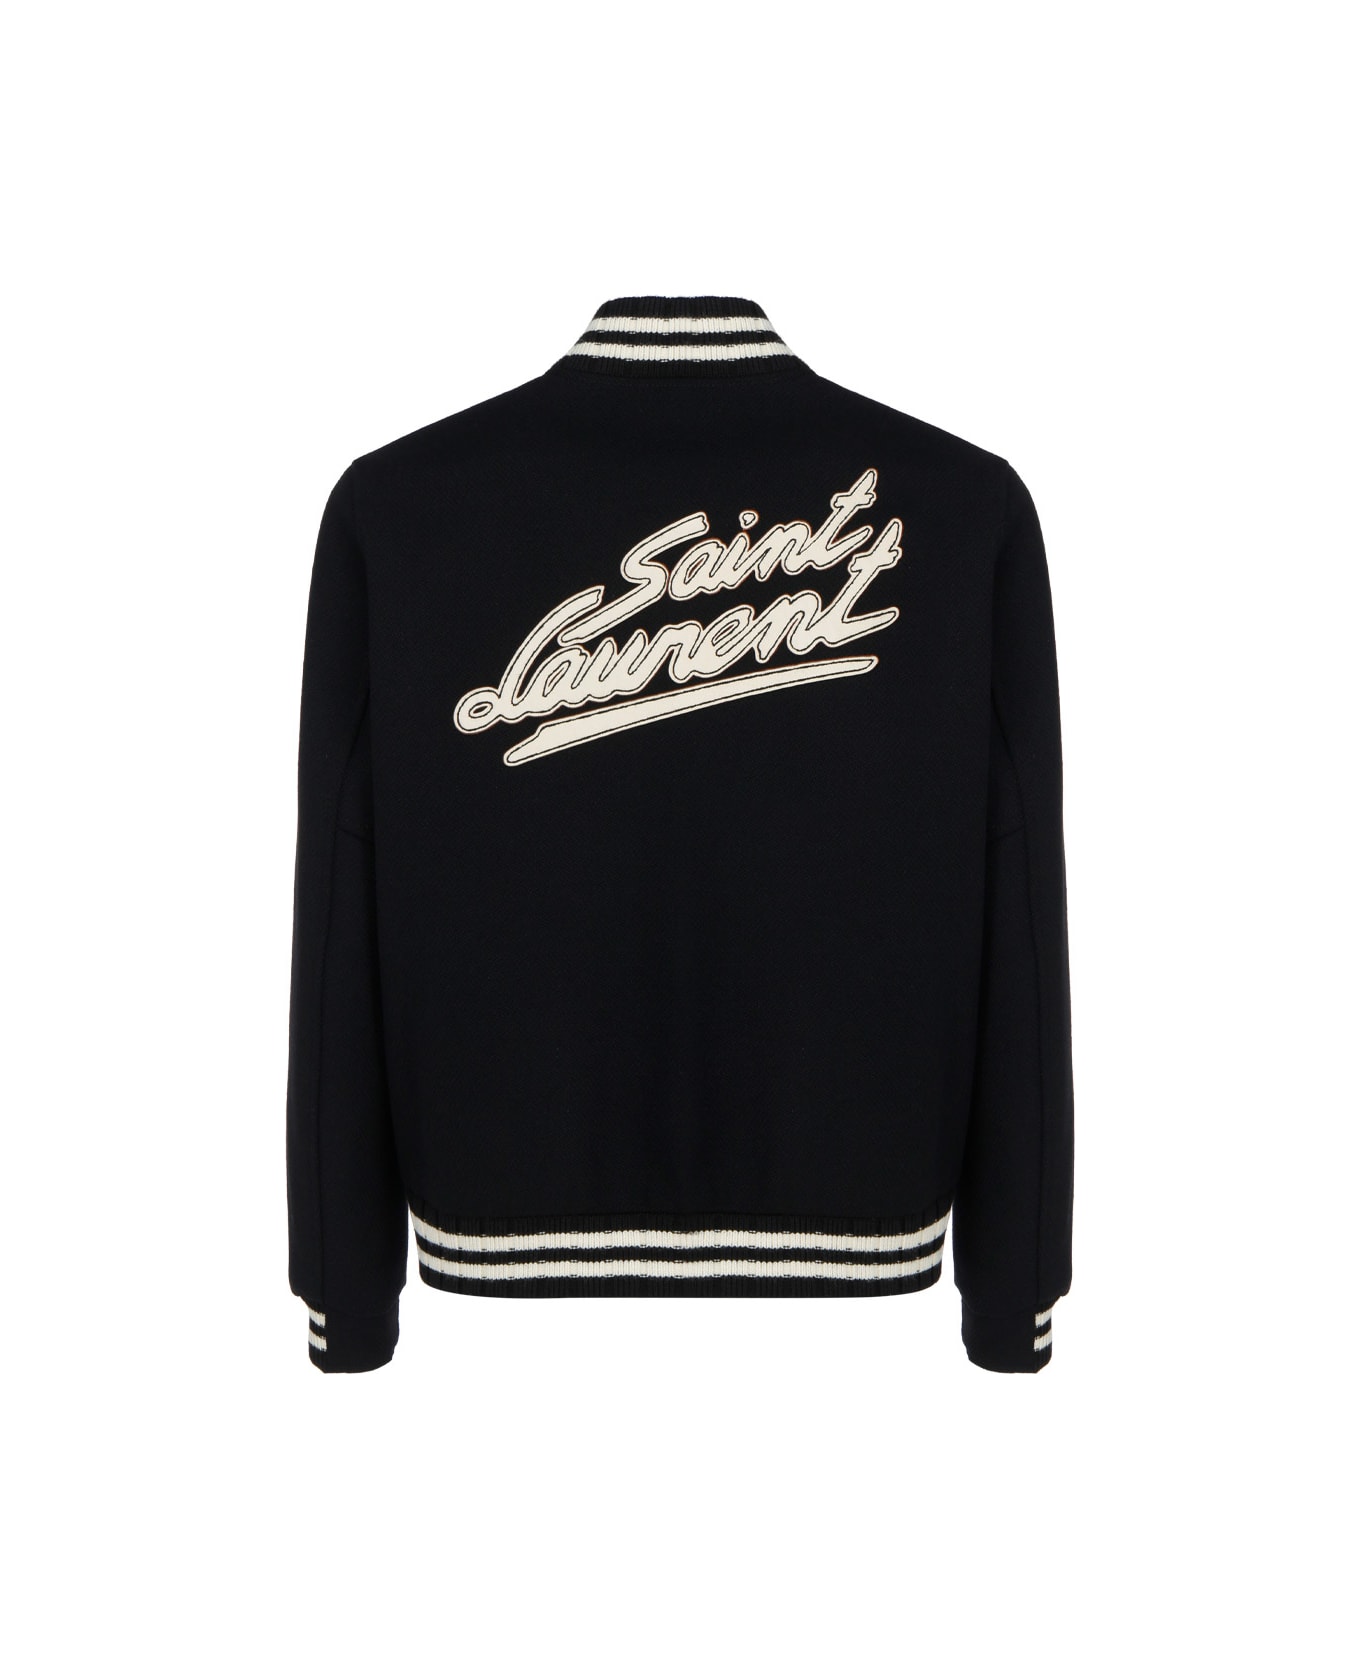 Saint Laurent Teddy College Jacket - Black ダウンジャケット